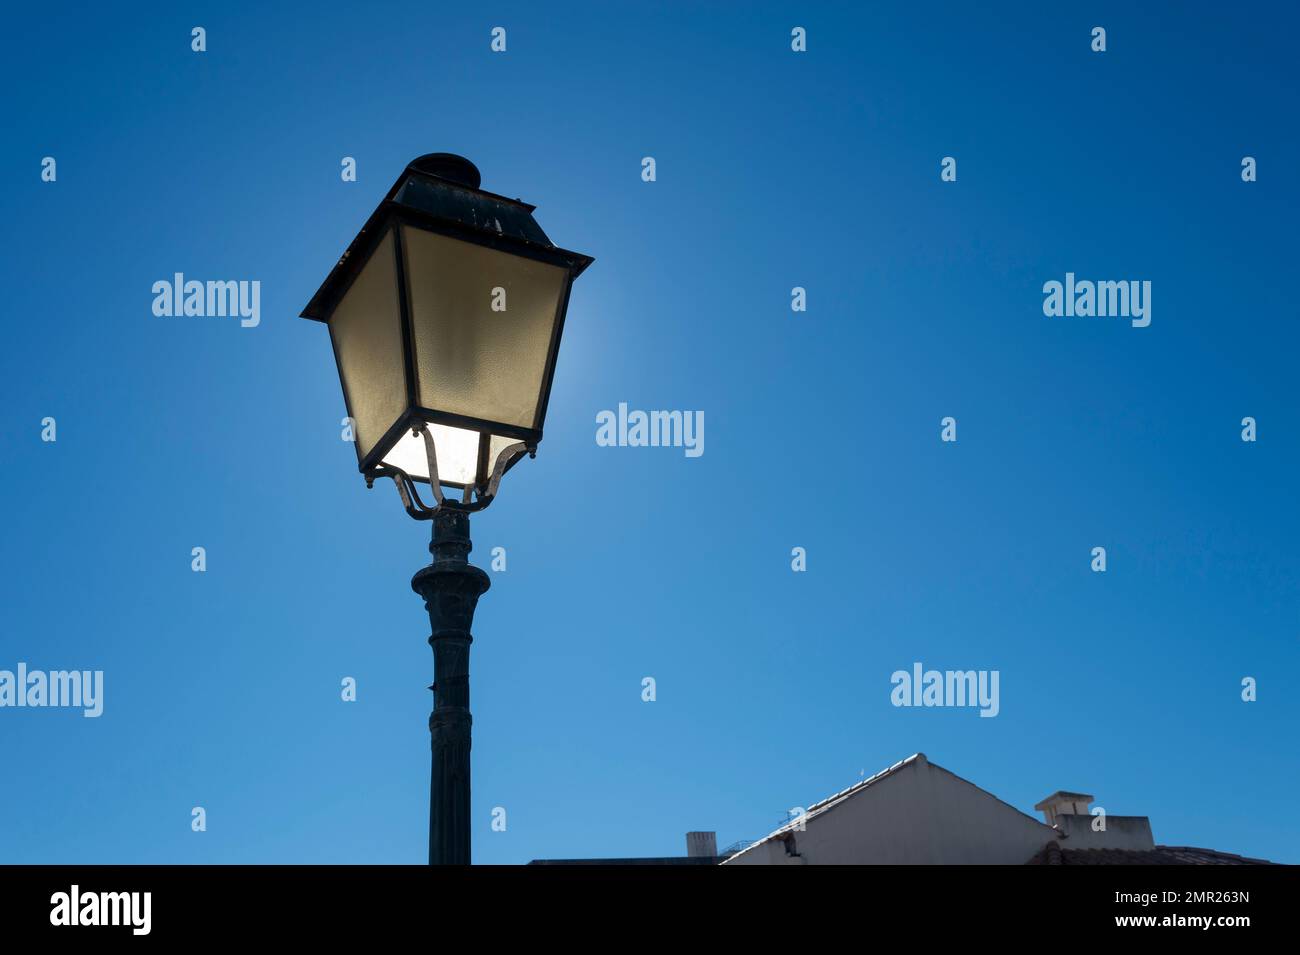 Straßenlampe im Laternen-Stil, vor einem blauen Himmel. Stockfoto